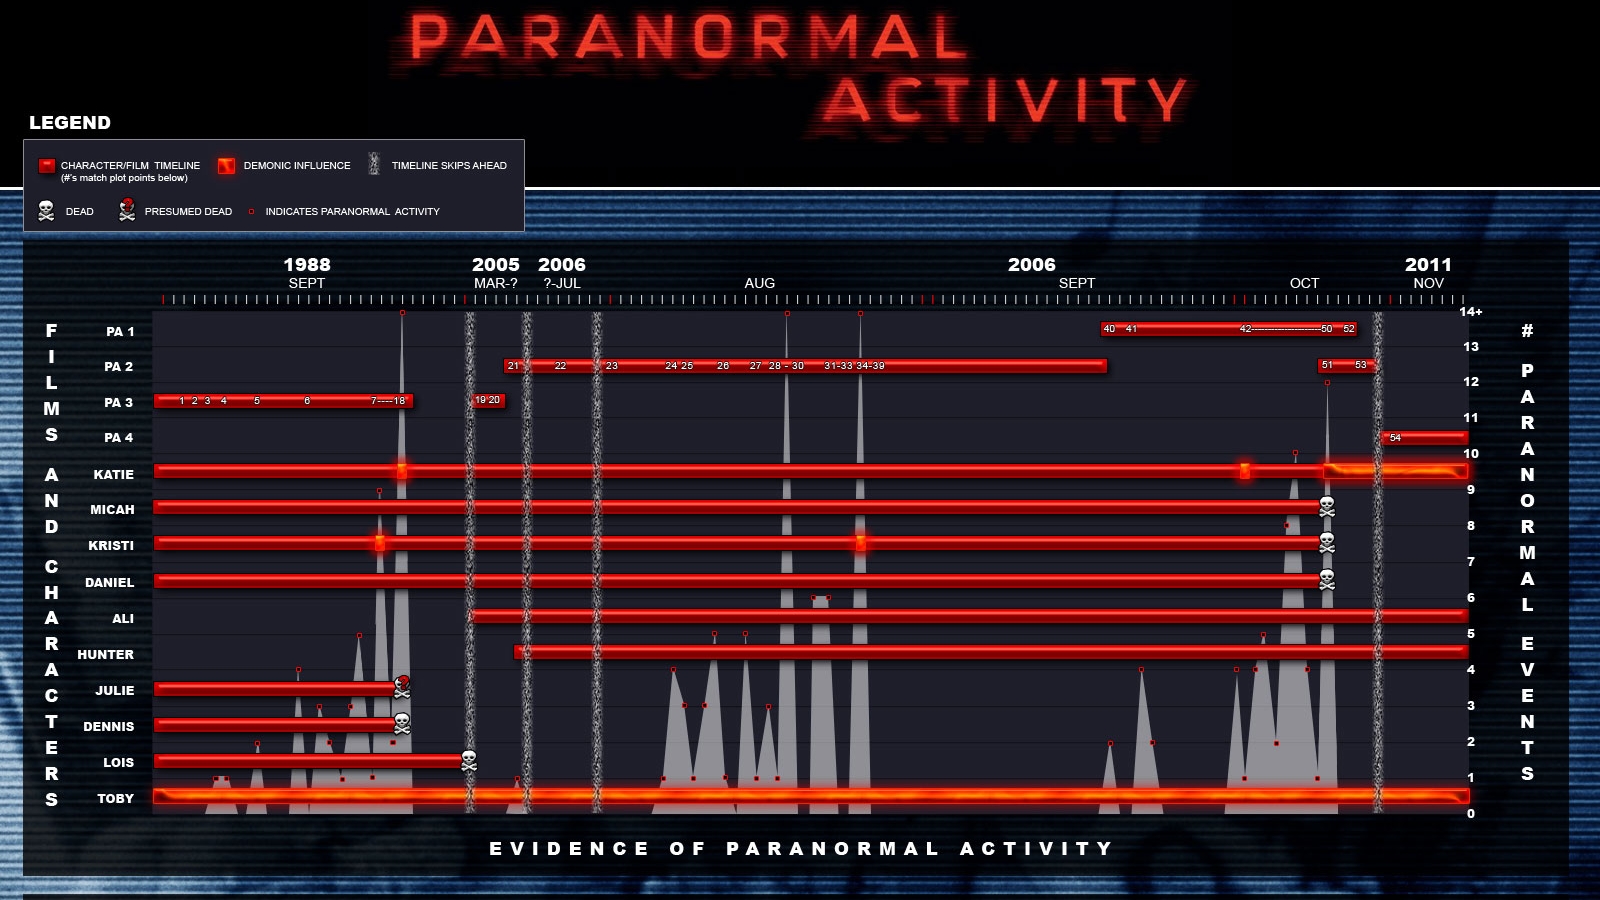 Descargar fondos de escritorio de Actividad Paranormal HD